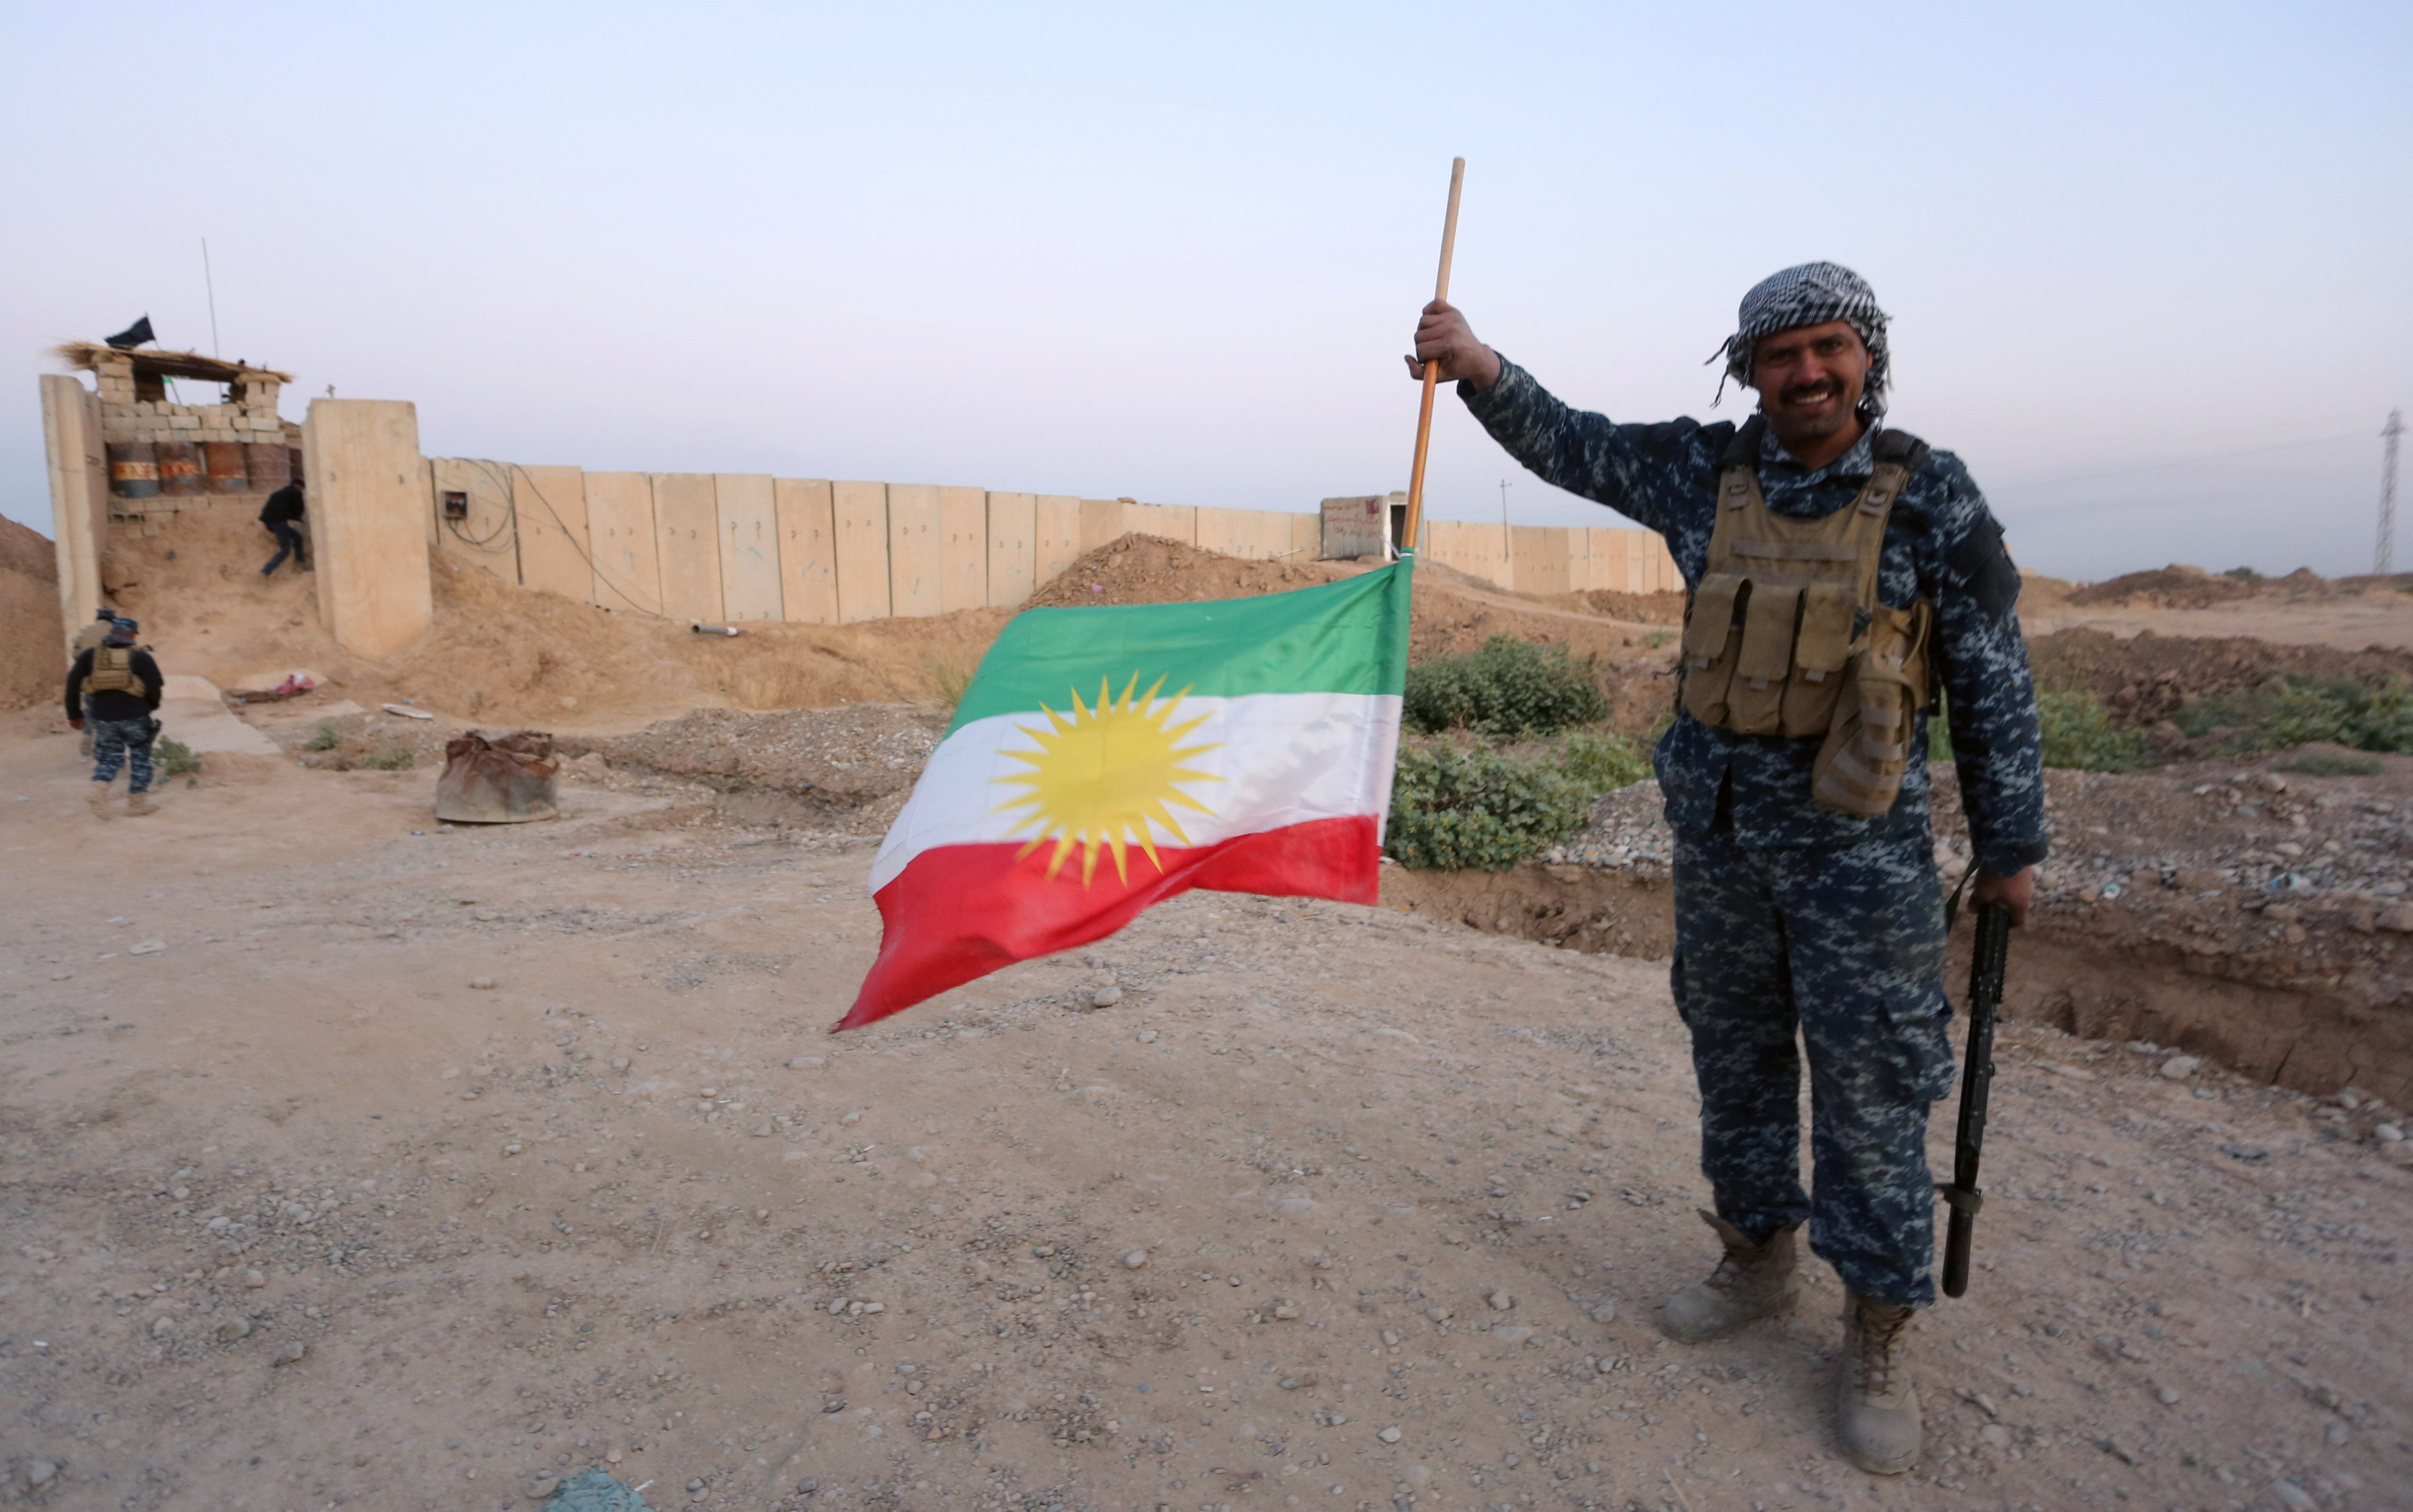 أحد جنود الجيش العراقى ينزل علم كردستان